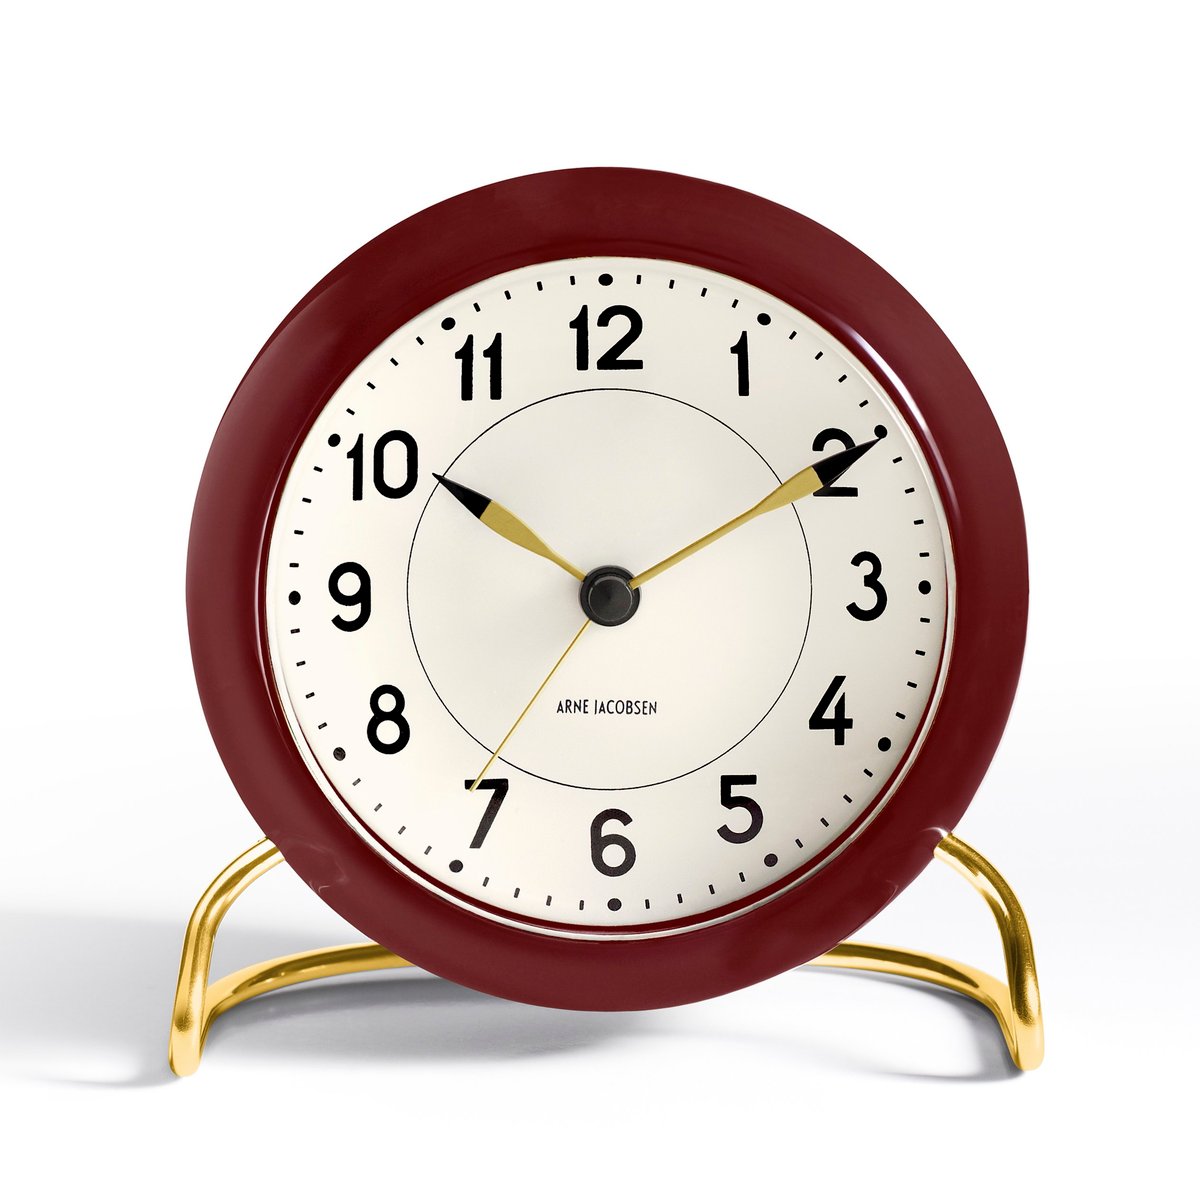 Arne Jacobsen Clocks AJ Station bordsur vinrød vinrød (5709513436768)